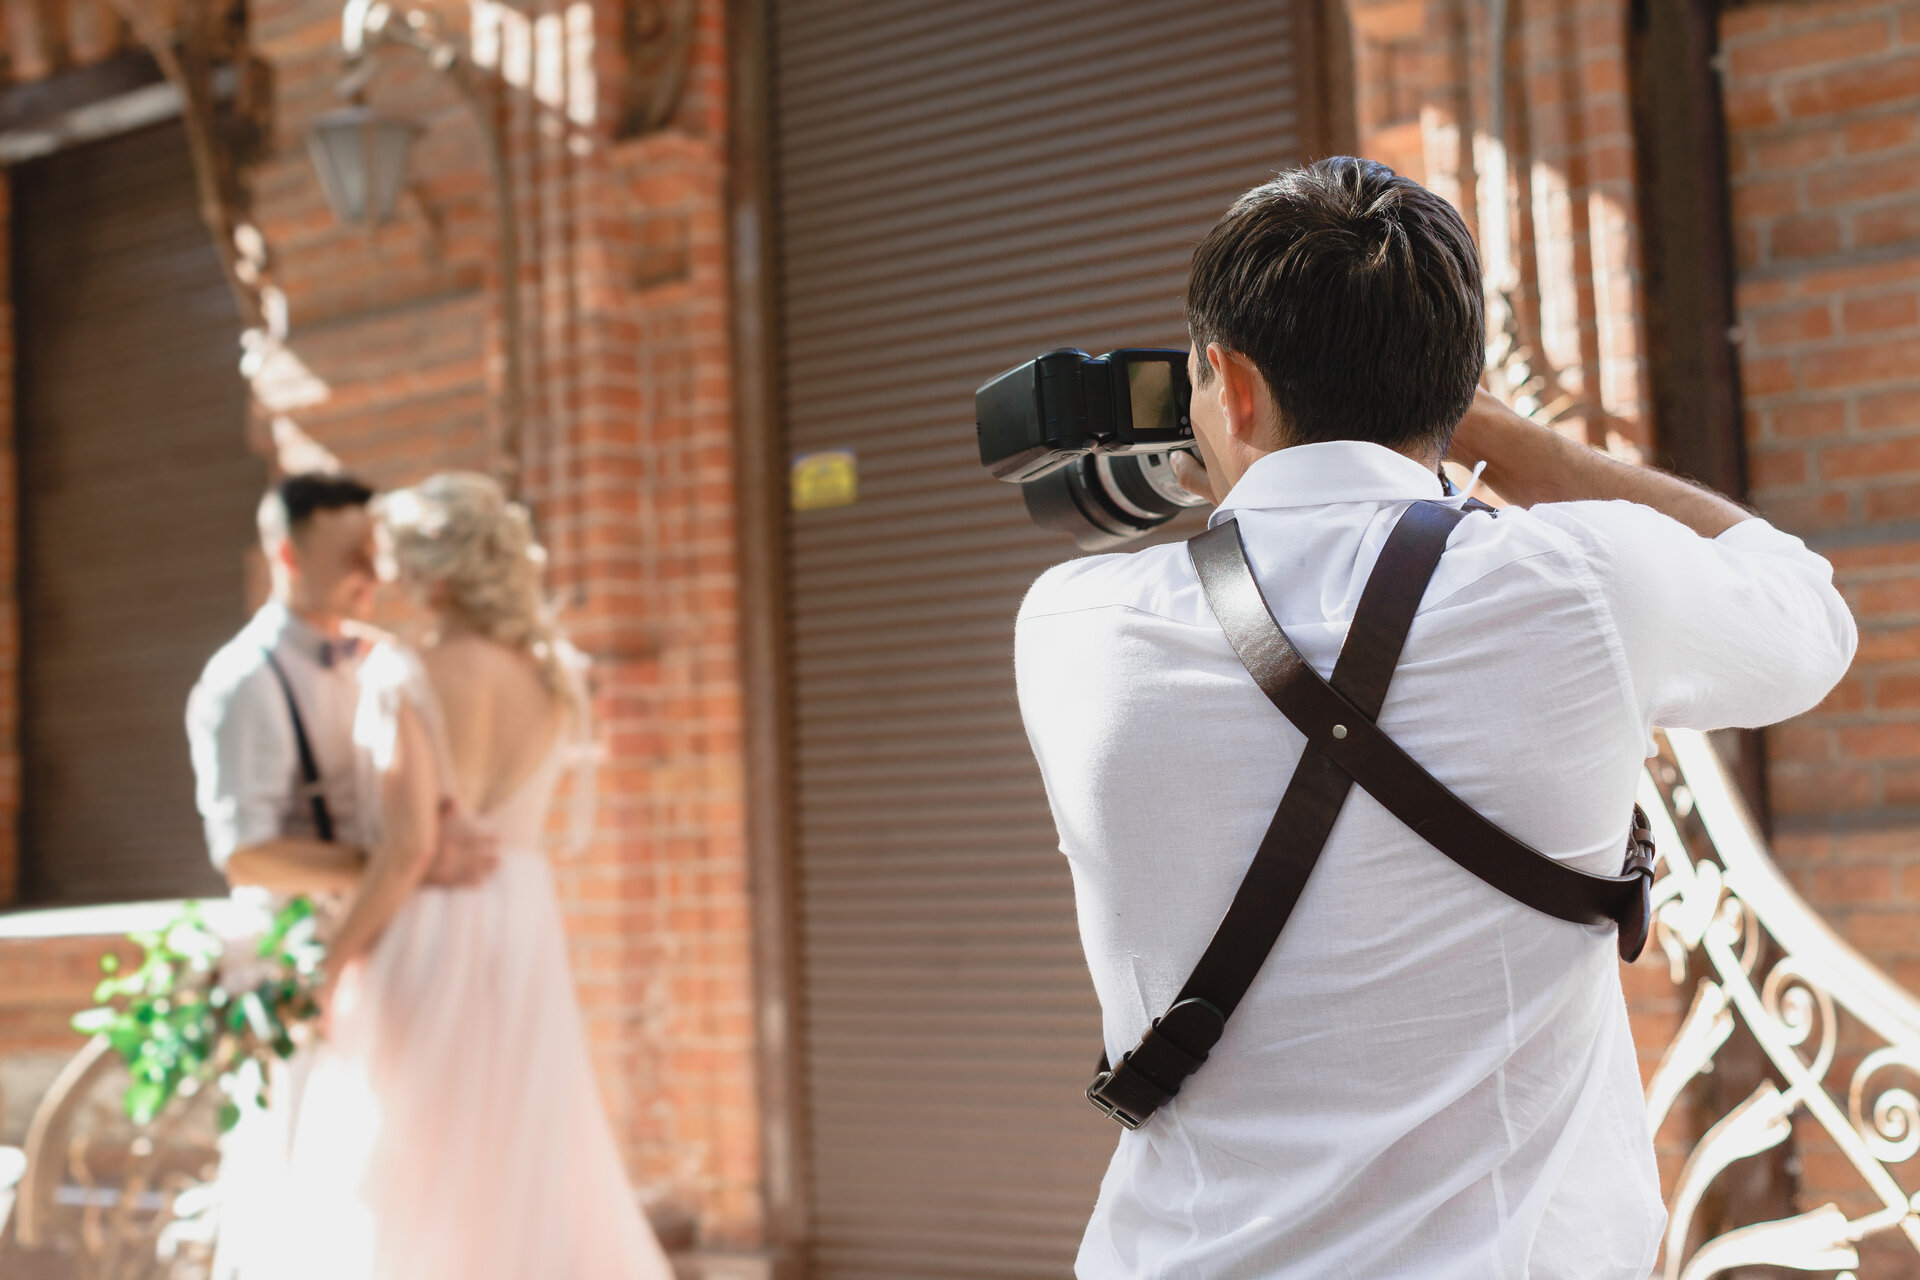 Hochzeitsfotograf in Frankfurt macht Bilder von Braut und Bräutigam